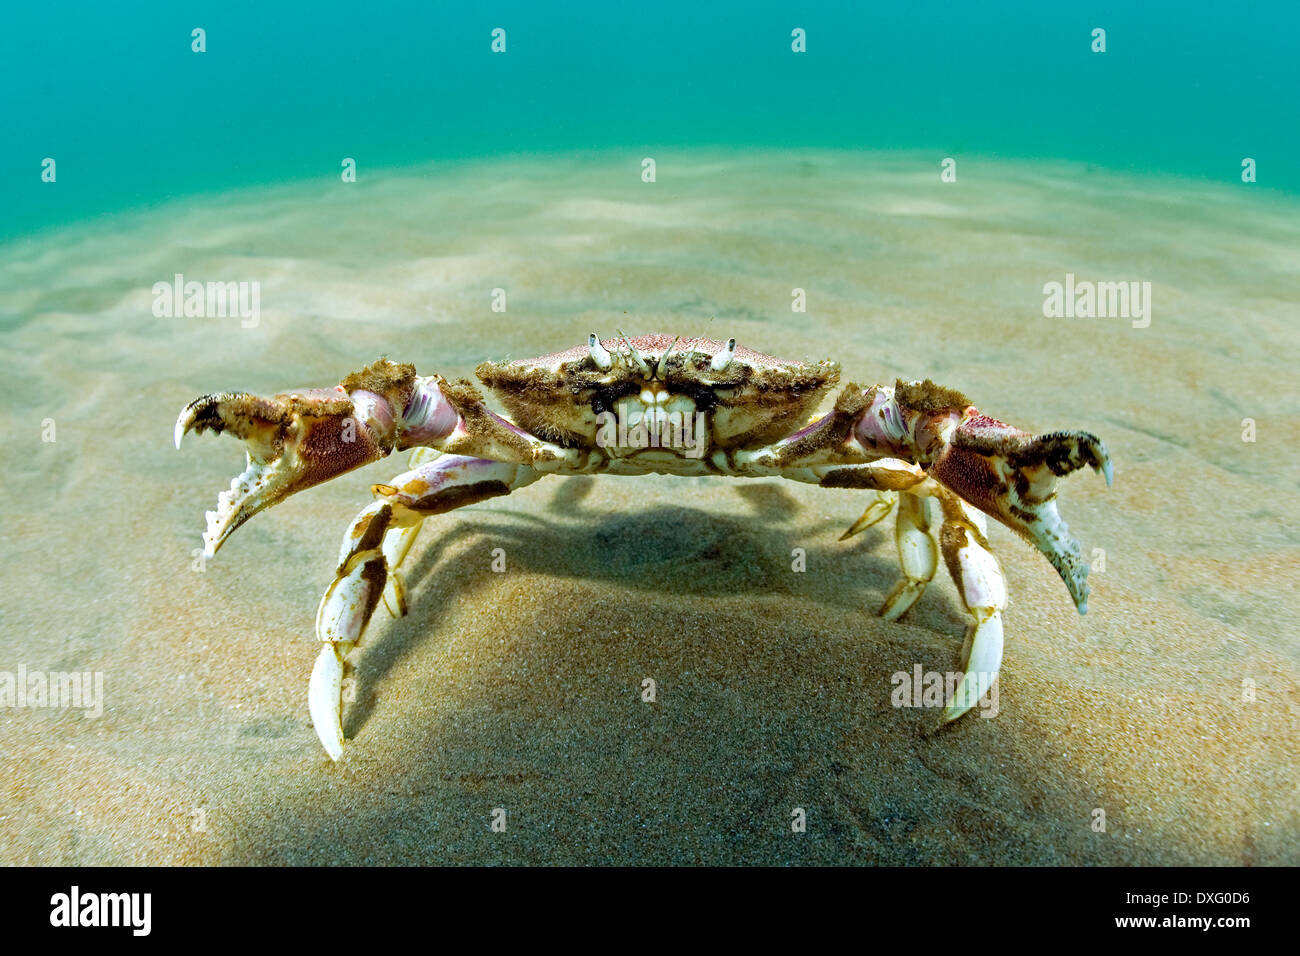 Crab defending territory, Portunidae, Valdes Peninsula, Patagonia, Argentina Stock Photo